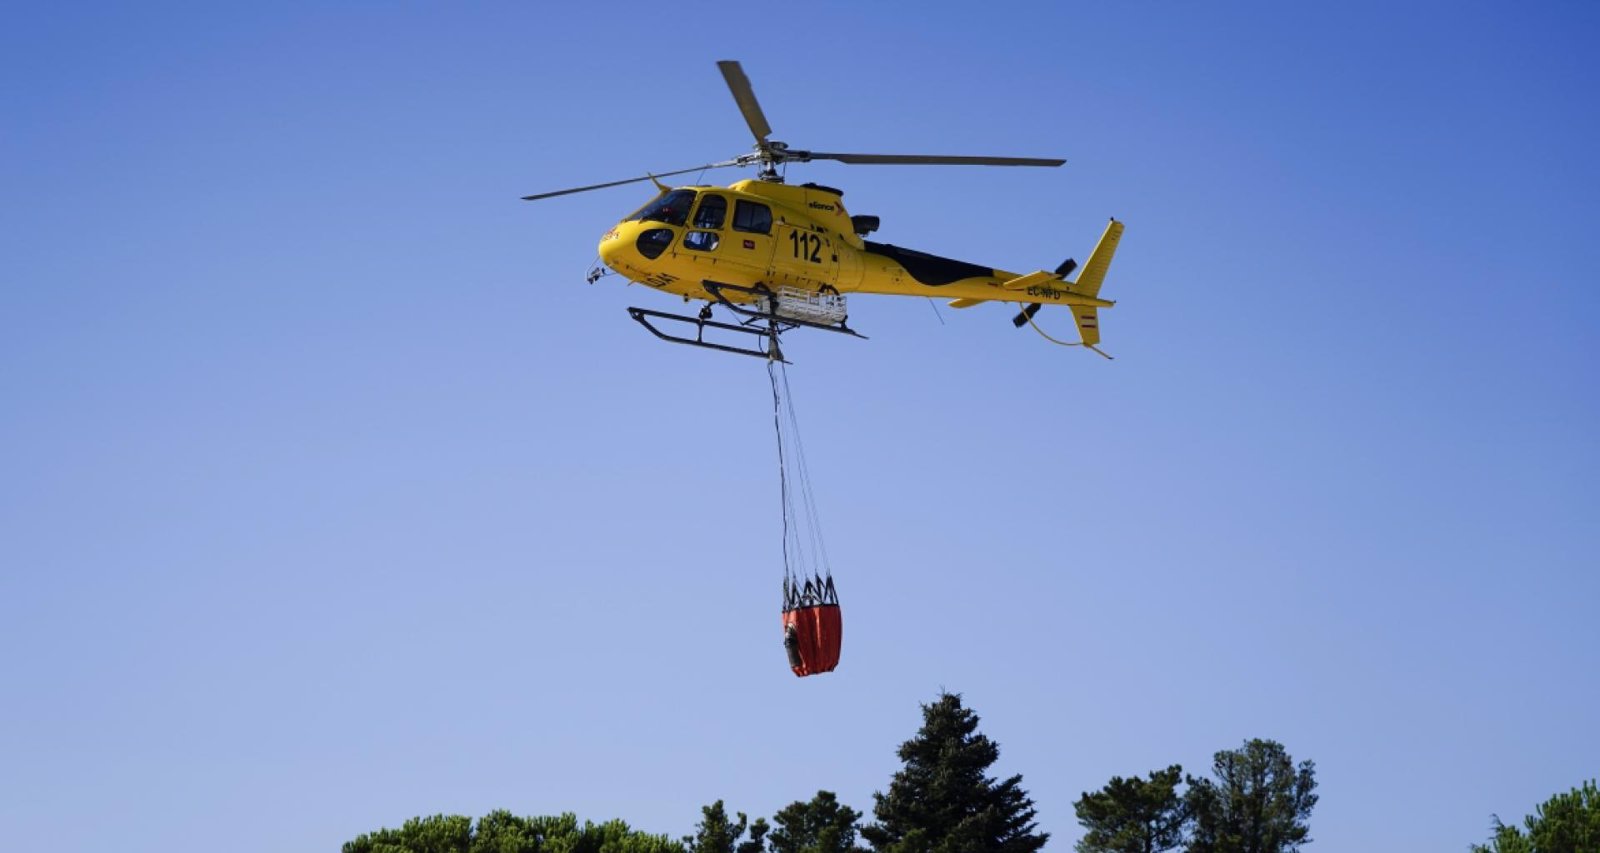  La Comunidad de Madrid activa un helicóptero bombardero para ayudar en el incendio de Cáceres